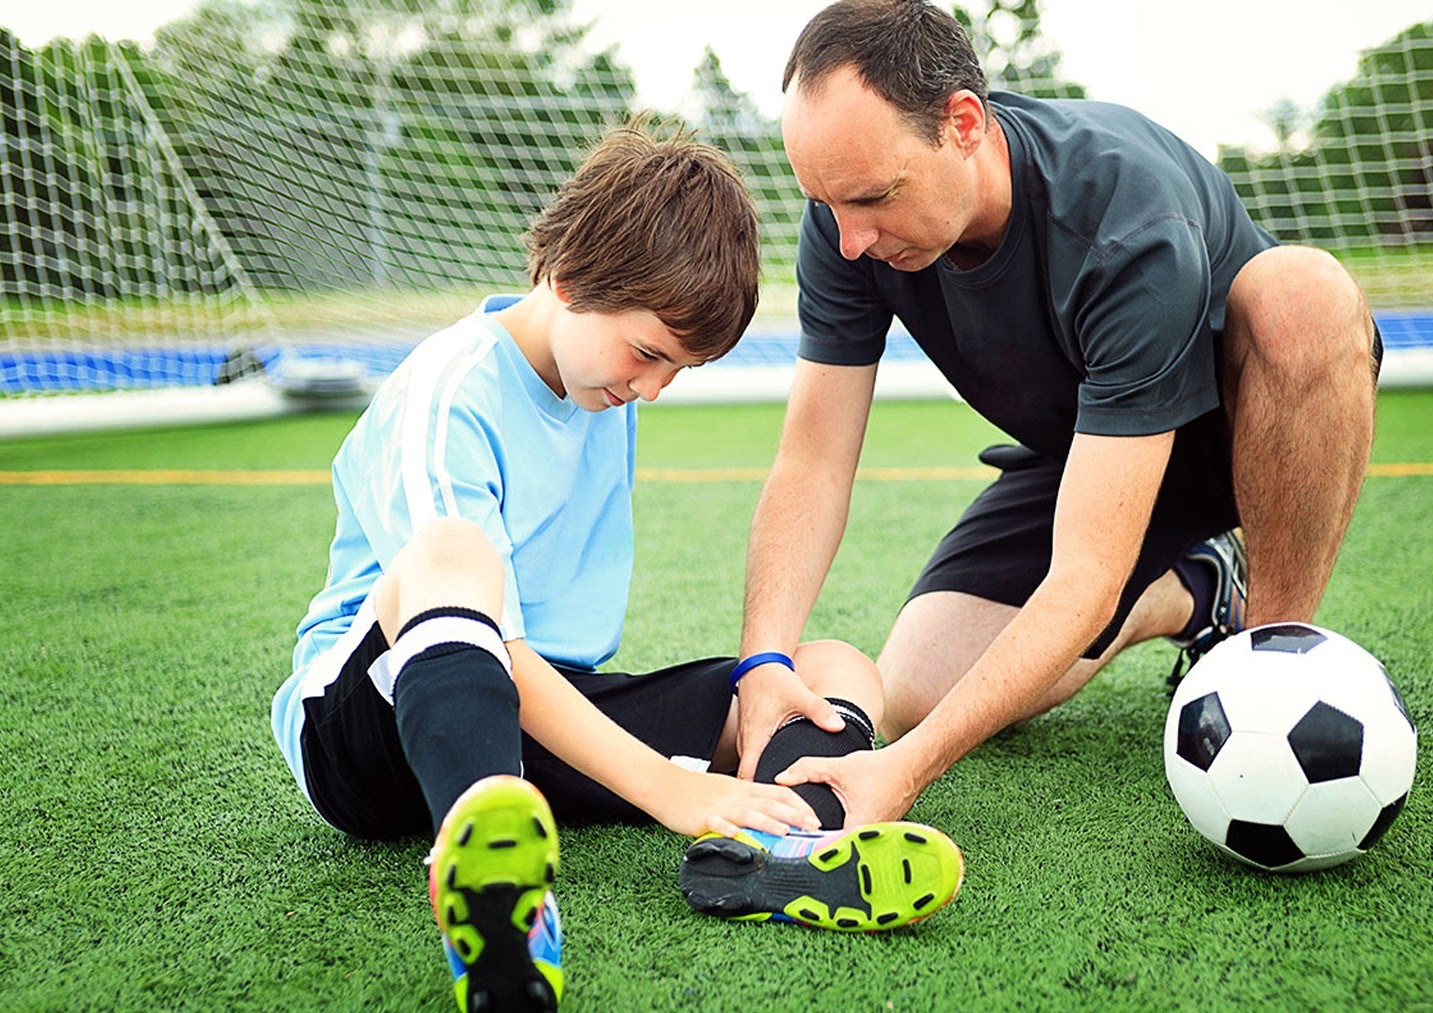  Спорт для детей: как совместить результативность и безопасность